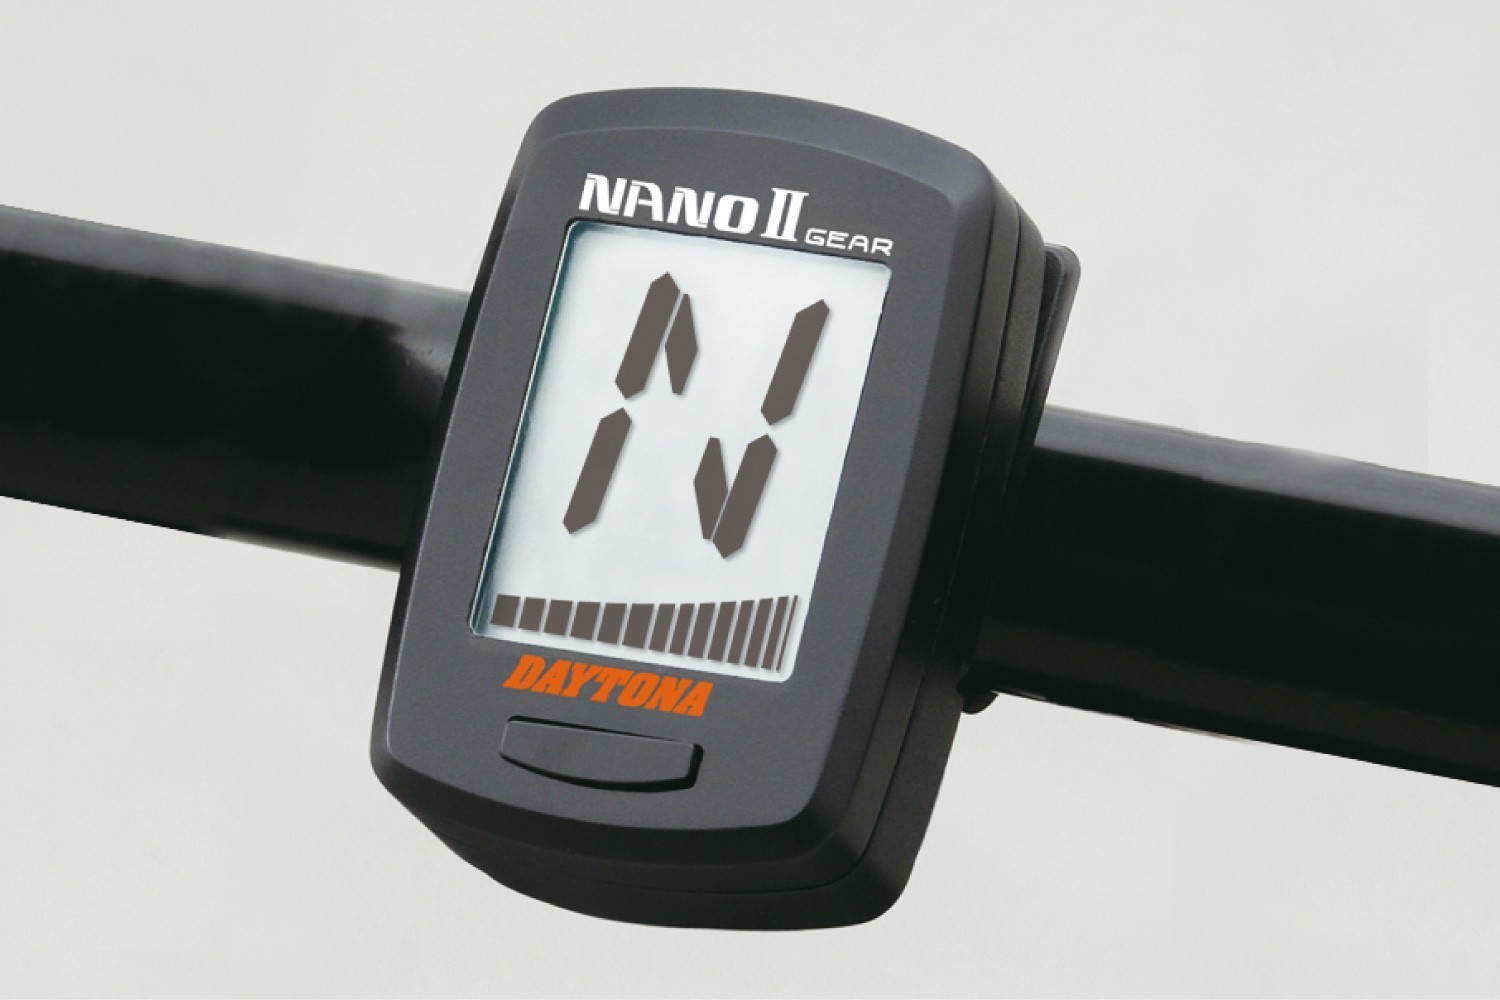 NANO-II digitale LCD Ganganzeige - Daytona Europe